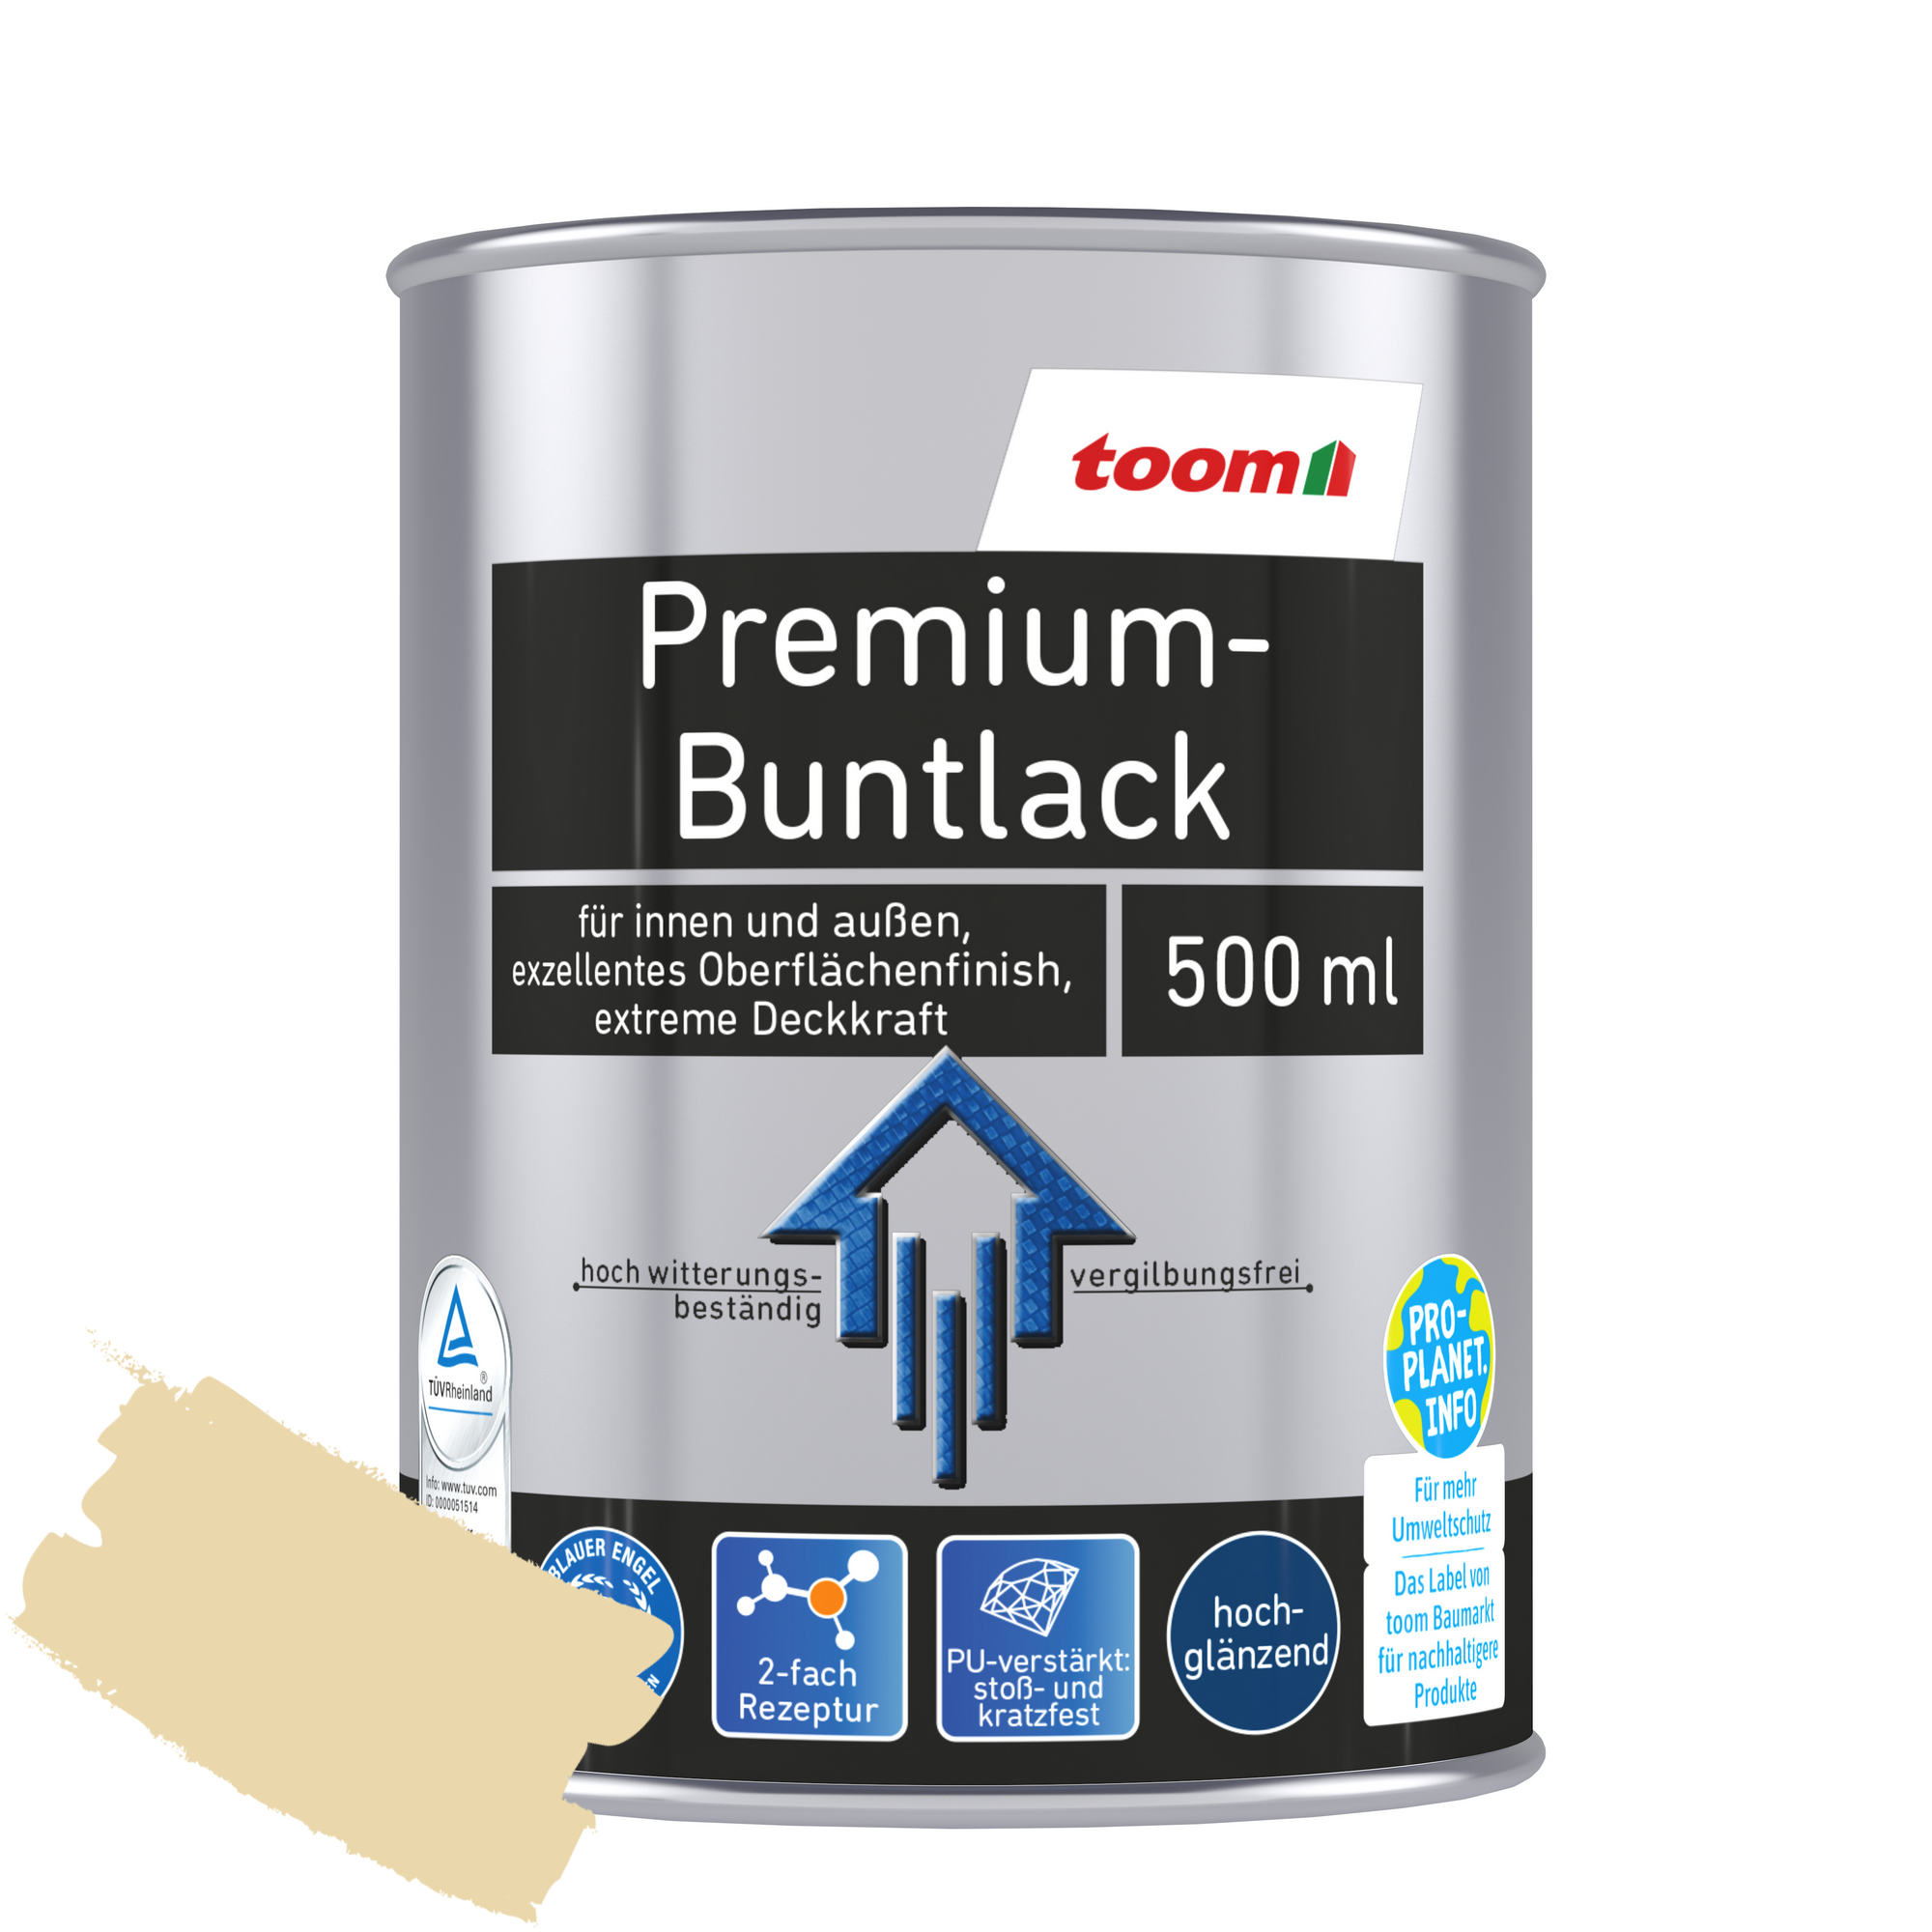 Premium-Buntlack elfenbeinfarben glänzend 500 ml + product picture